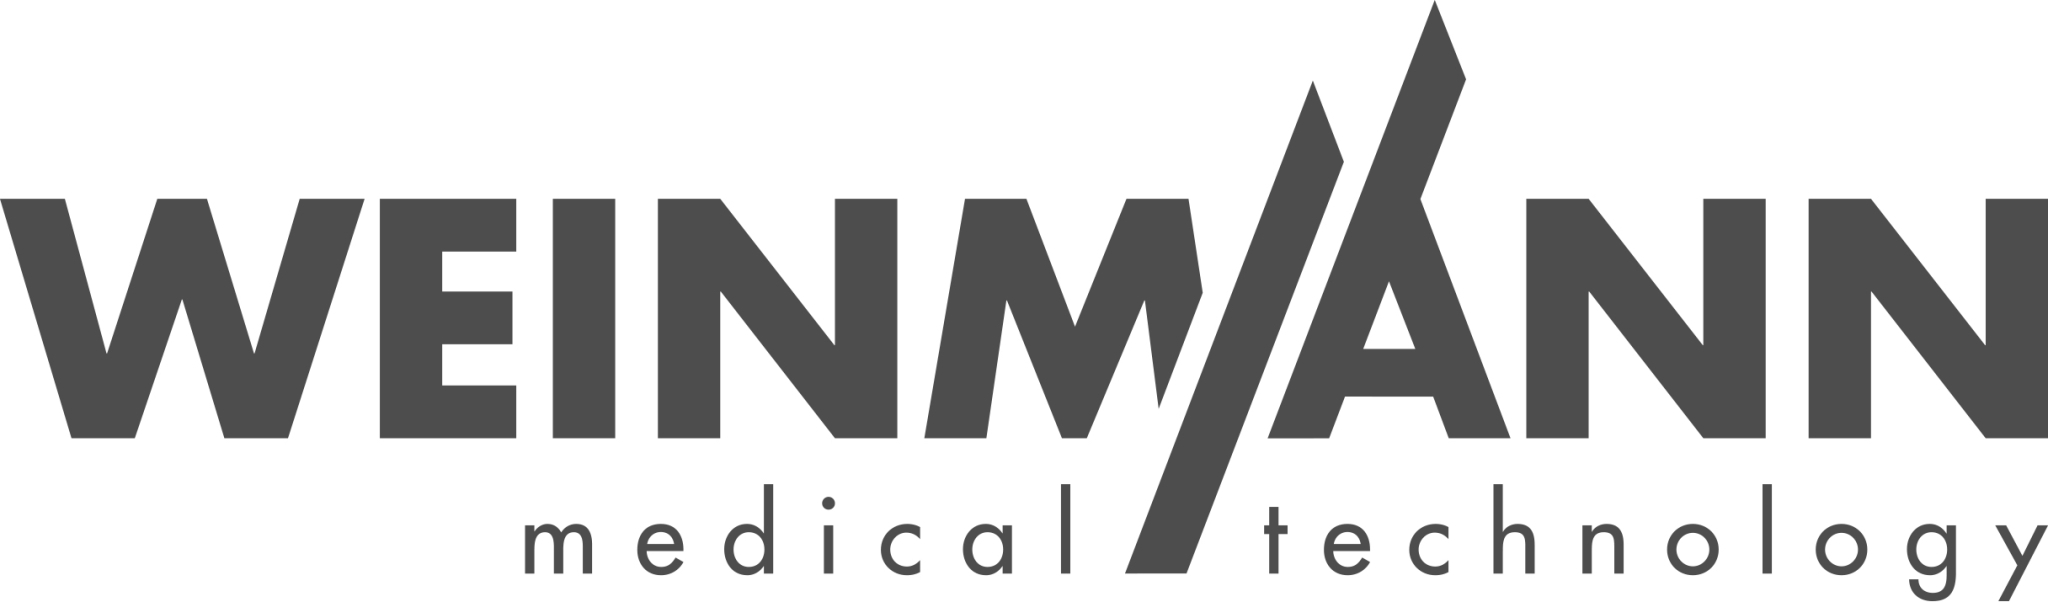 sponsor logo - WEINMANN Emergency Medical Technology GmbH+Co.KG